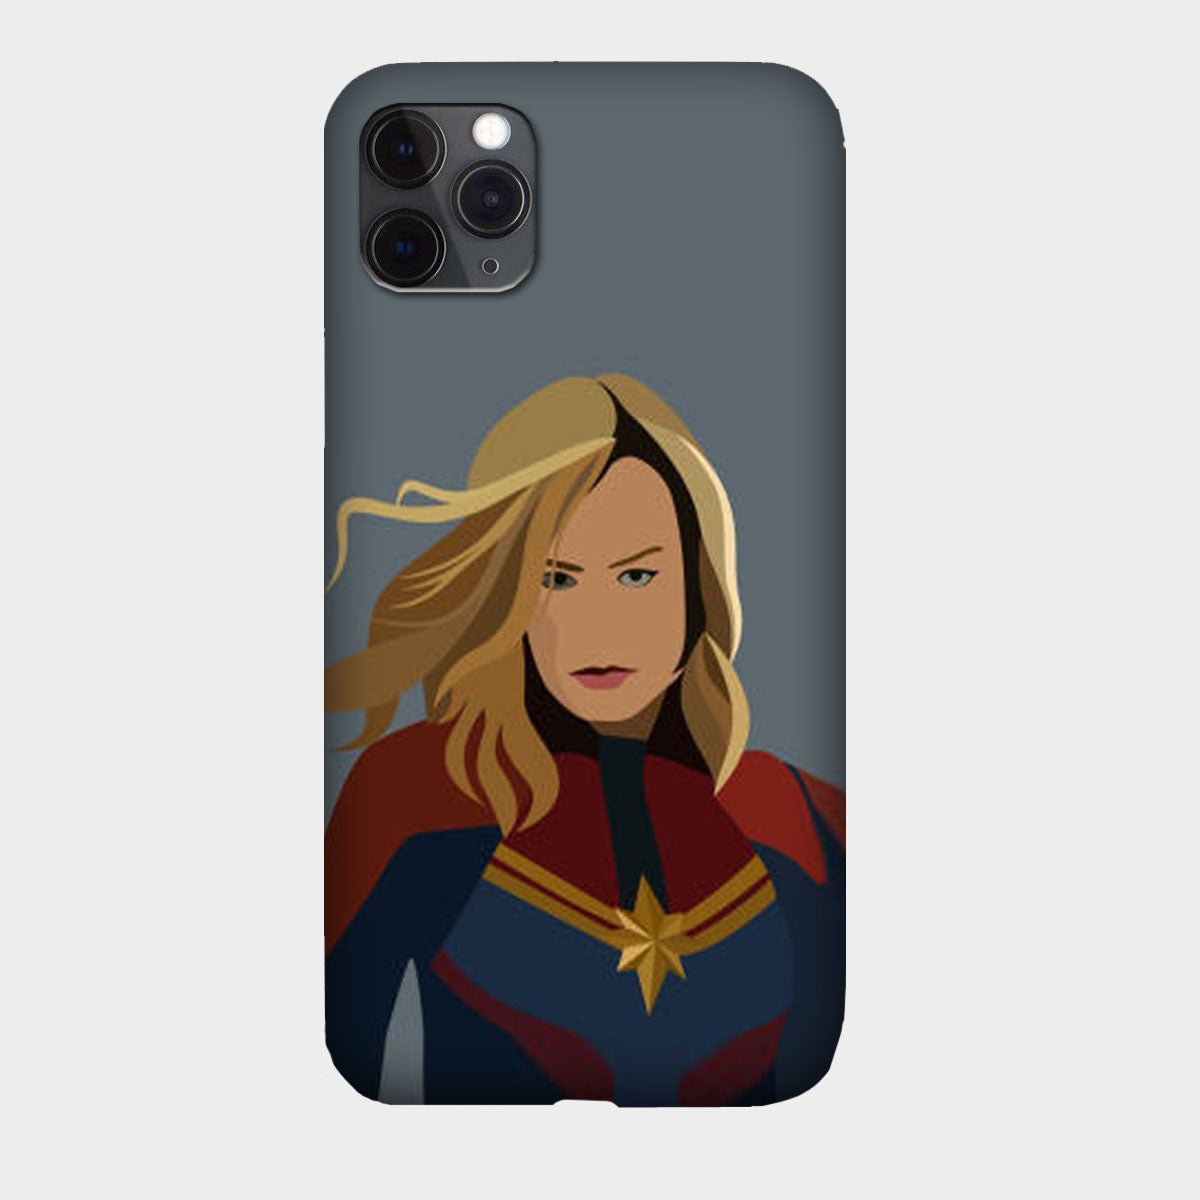 Captain Marvel - Avengers - Brie Larson - Mobile Phone Cover - Hard Case